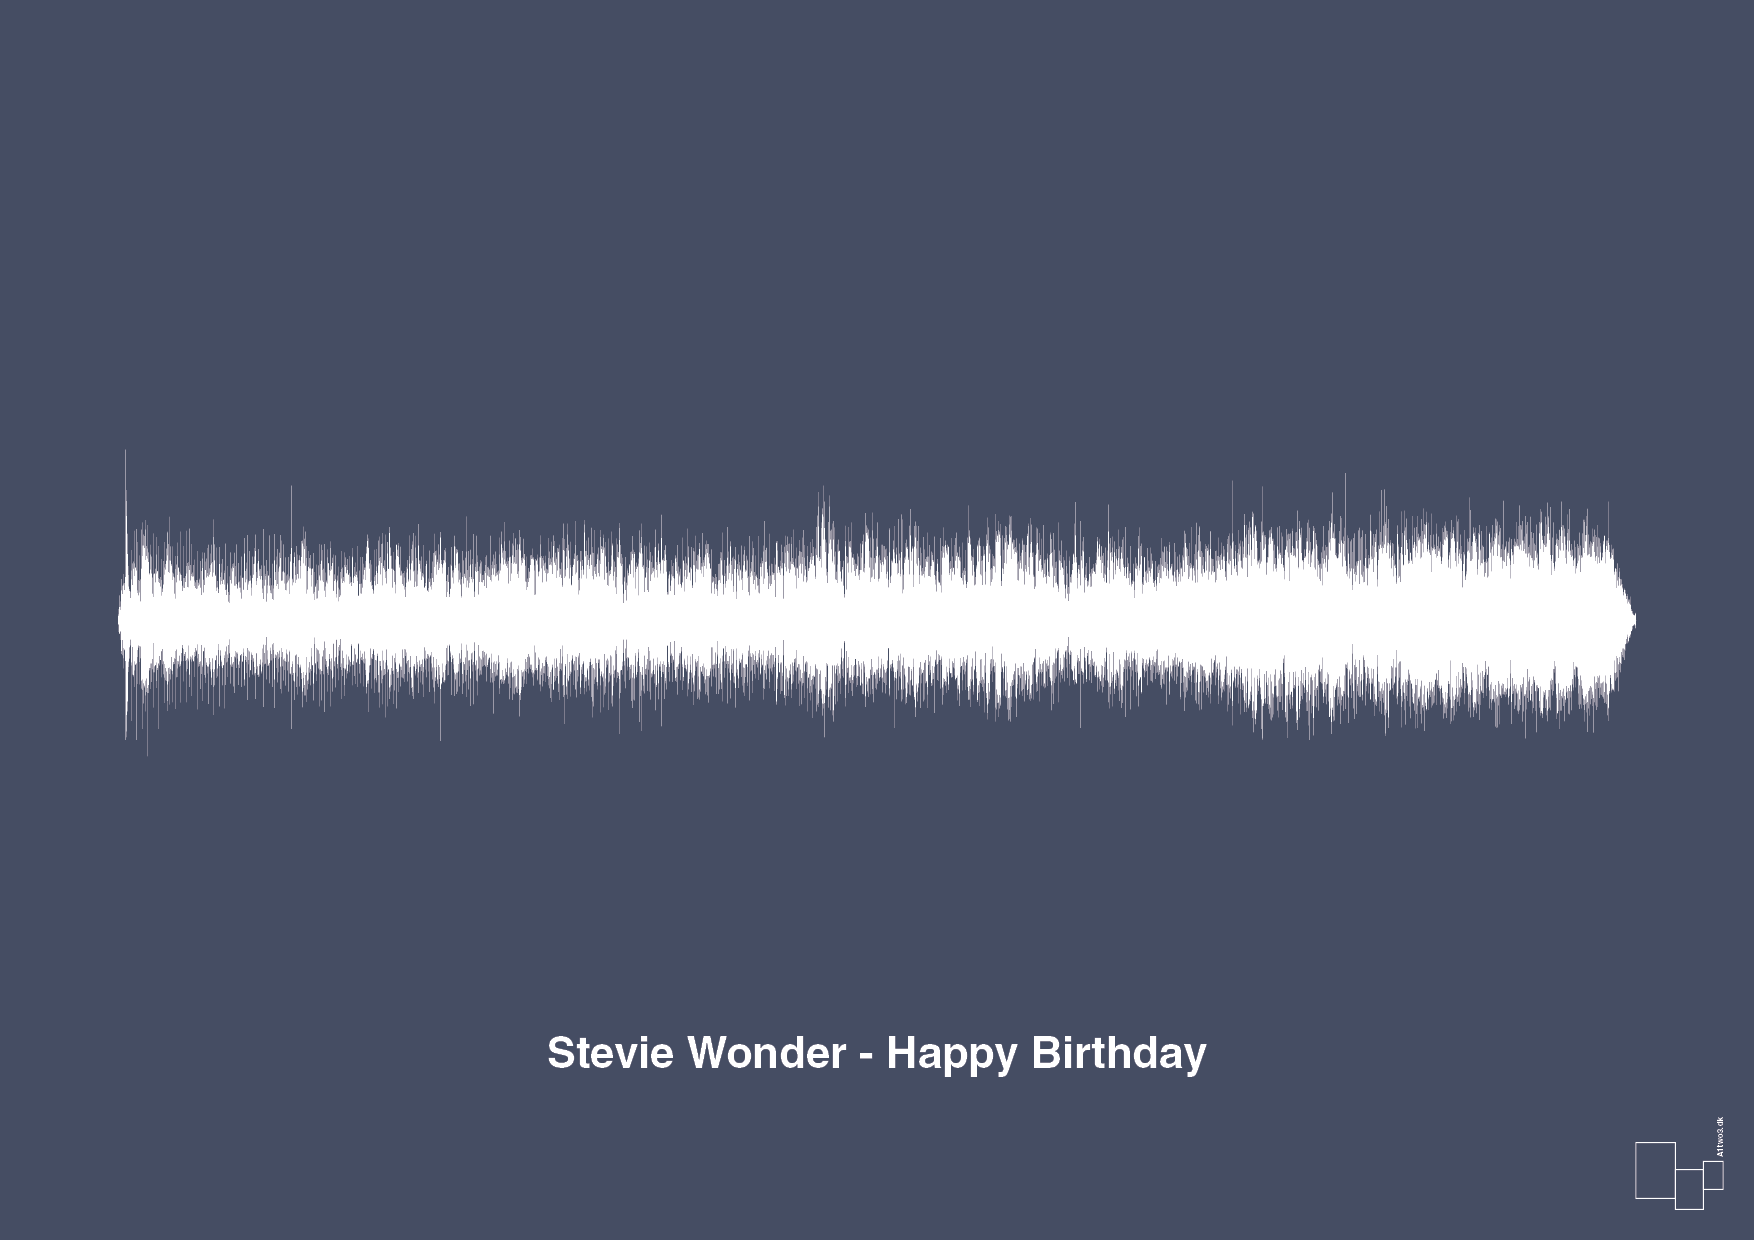 stevie wonder - happy birthday - Plakat med Musik i Petrol